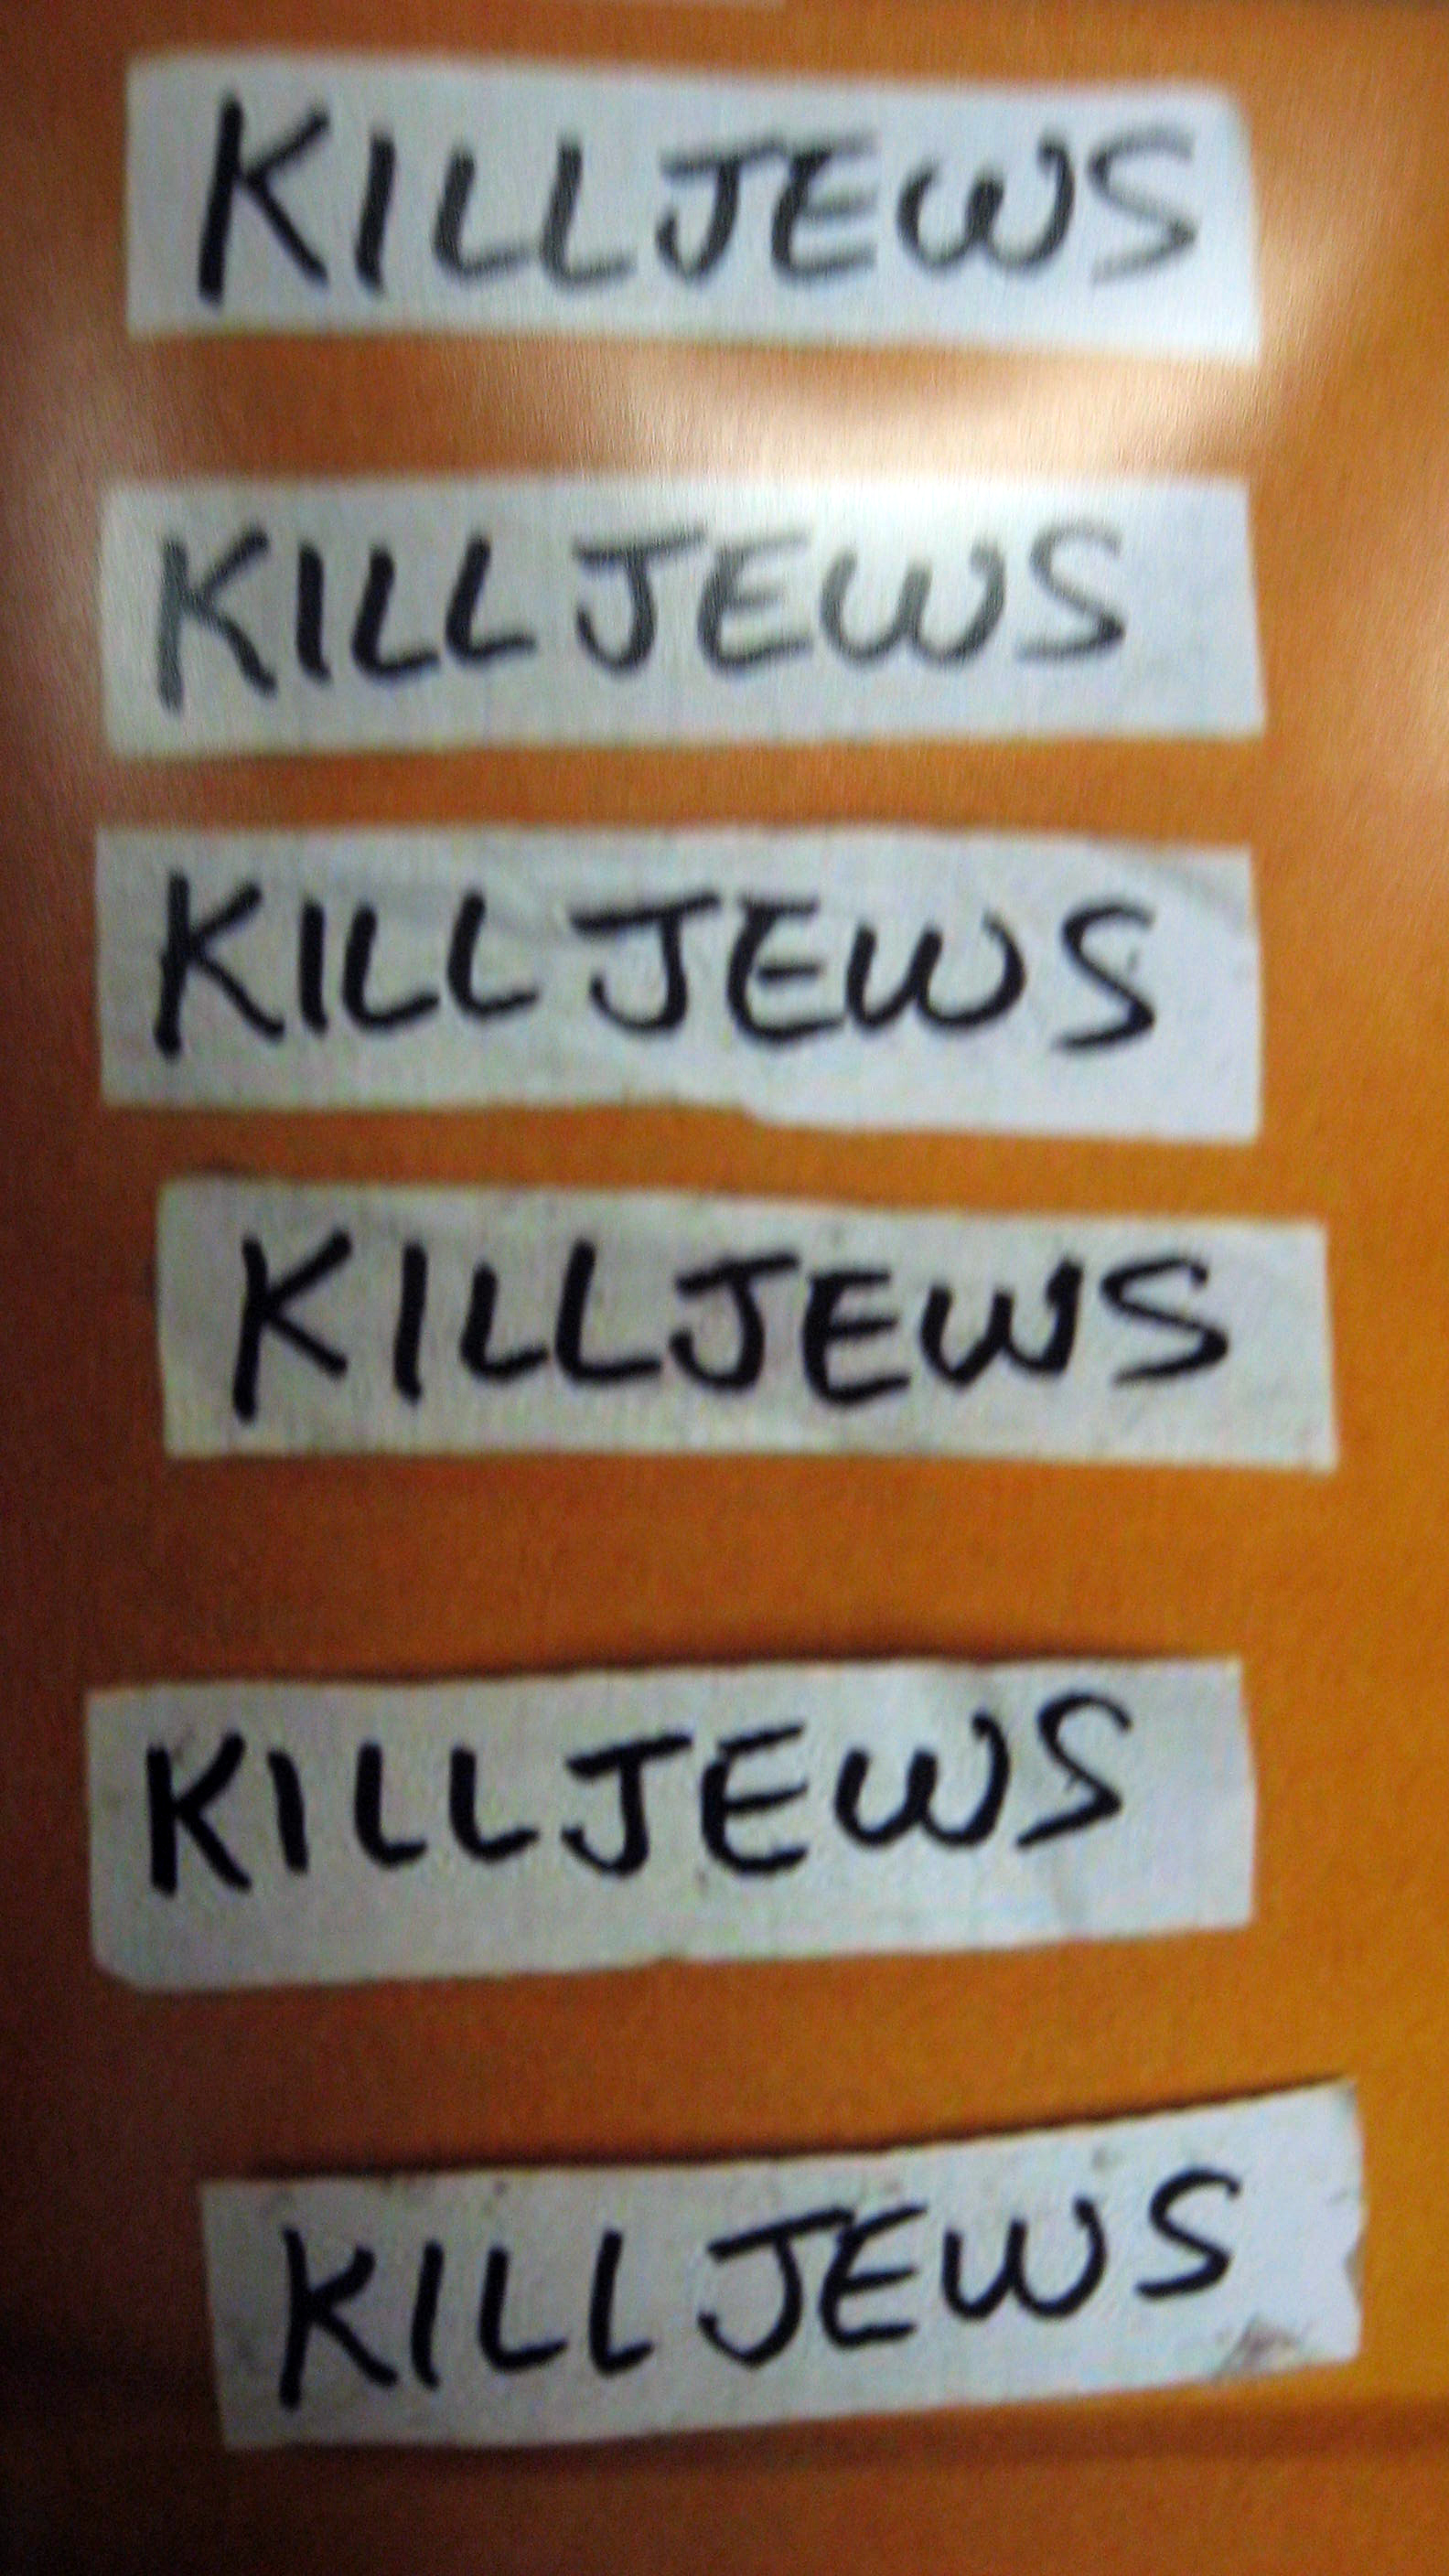 A close-up of one of the notes threatening Jews in Nassau County - Mineola, NY - Nov 3, 2010 - Photo: Mona Rivera / 1010 WINS